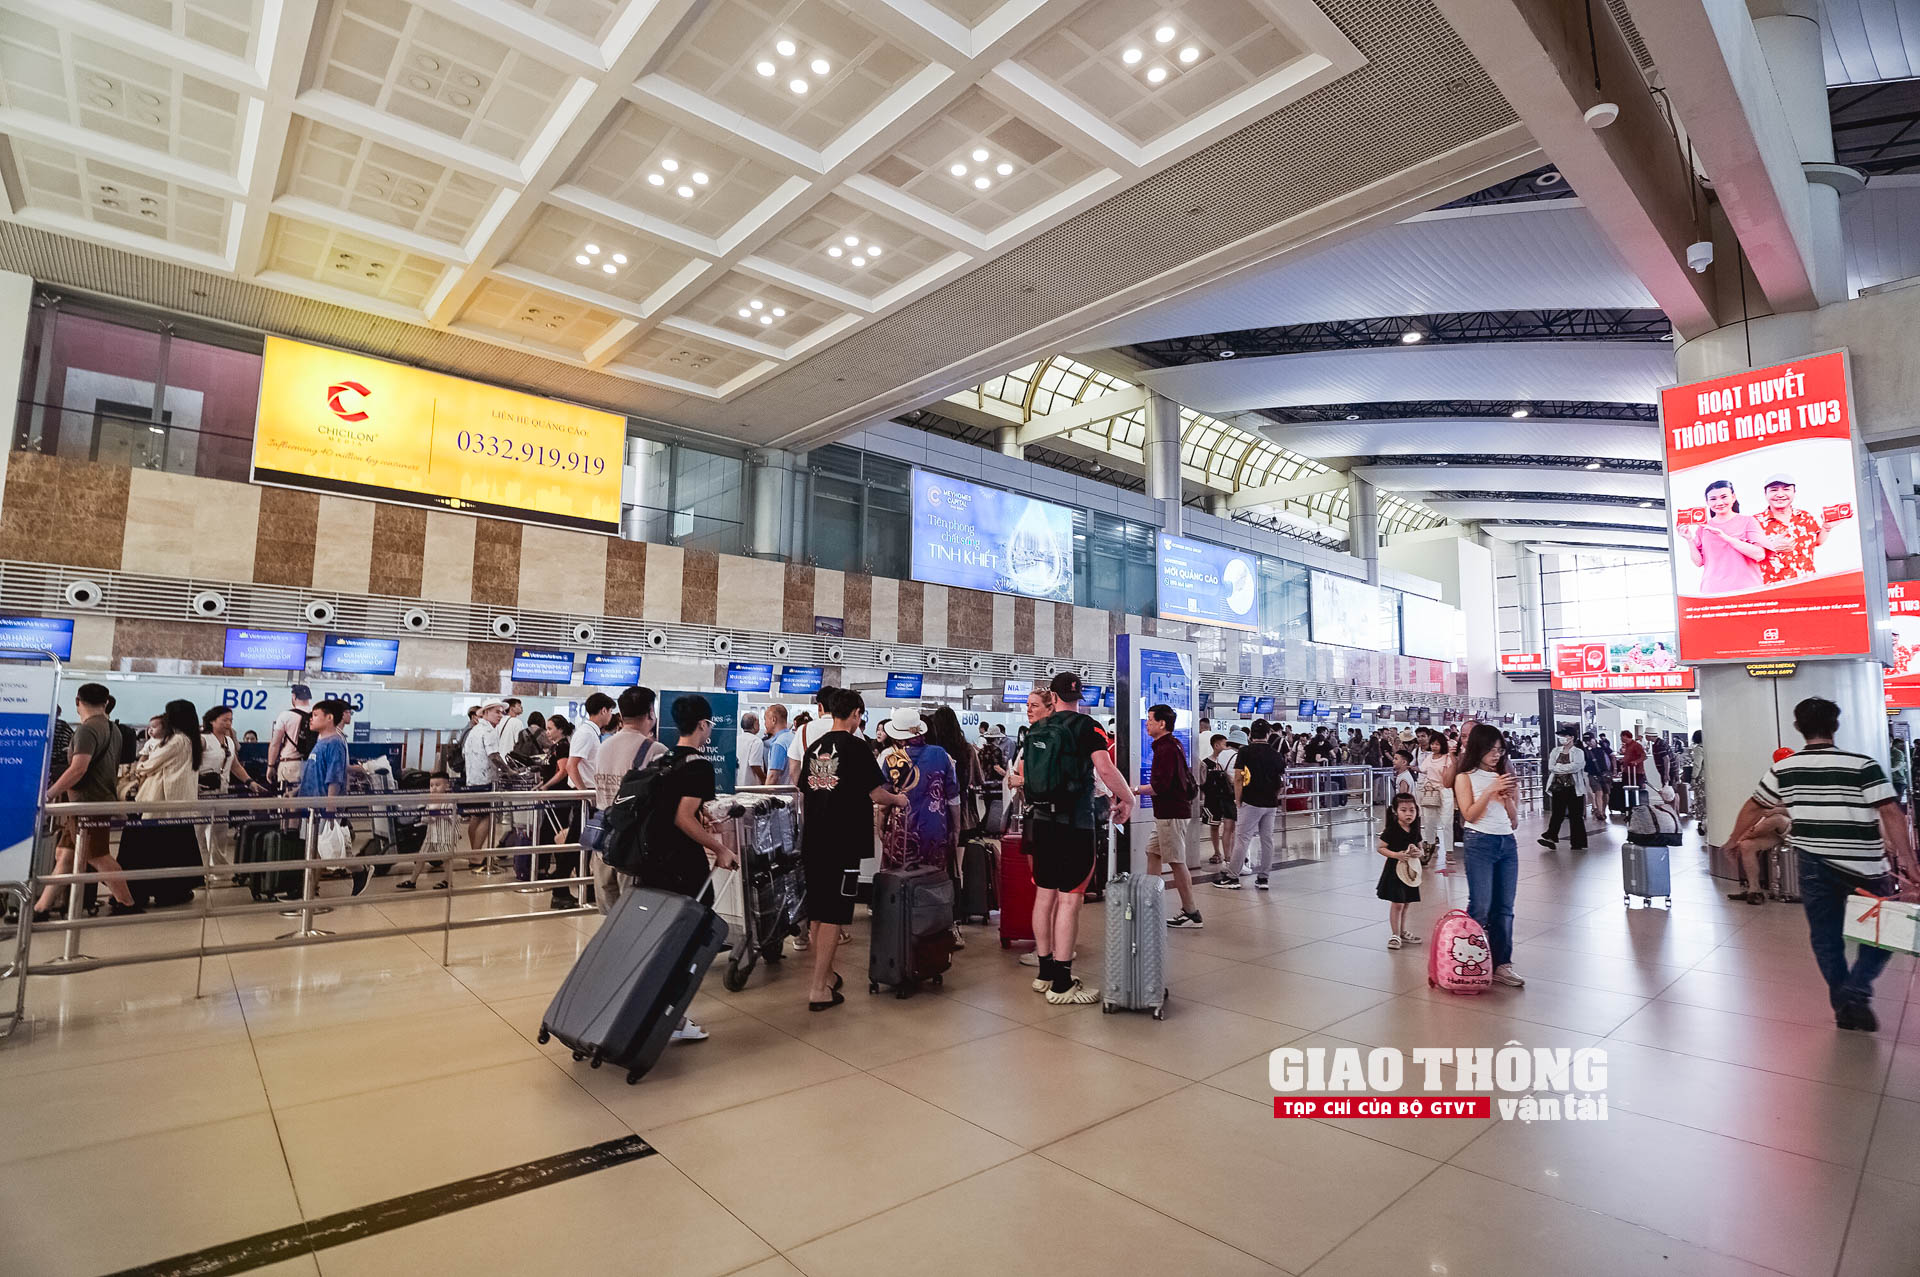 Cận cảnh ngày cao điểm nhất tại sân bay Nội Bài dịp nghỉ Lễ 30/4 - 1/5- Ảnh 2.